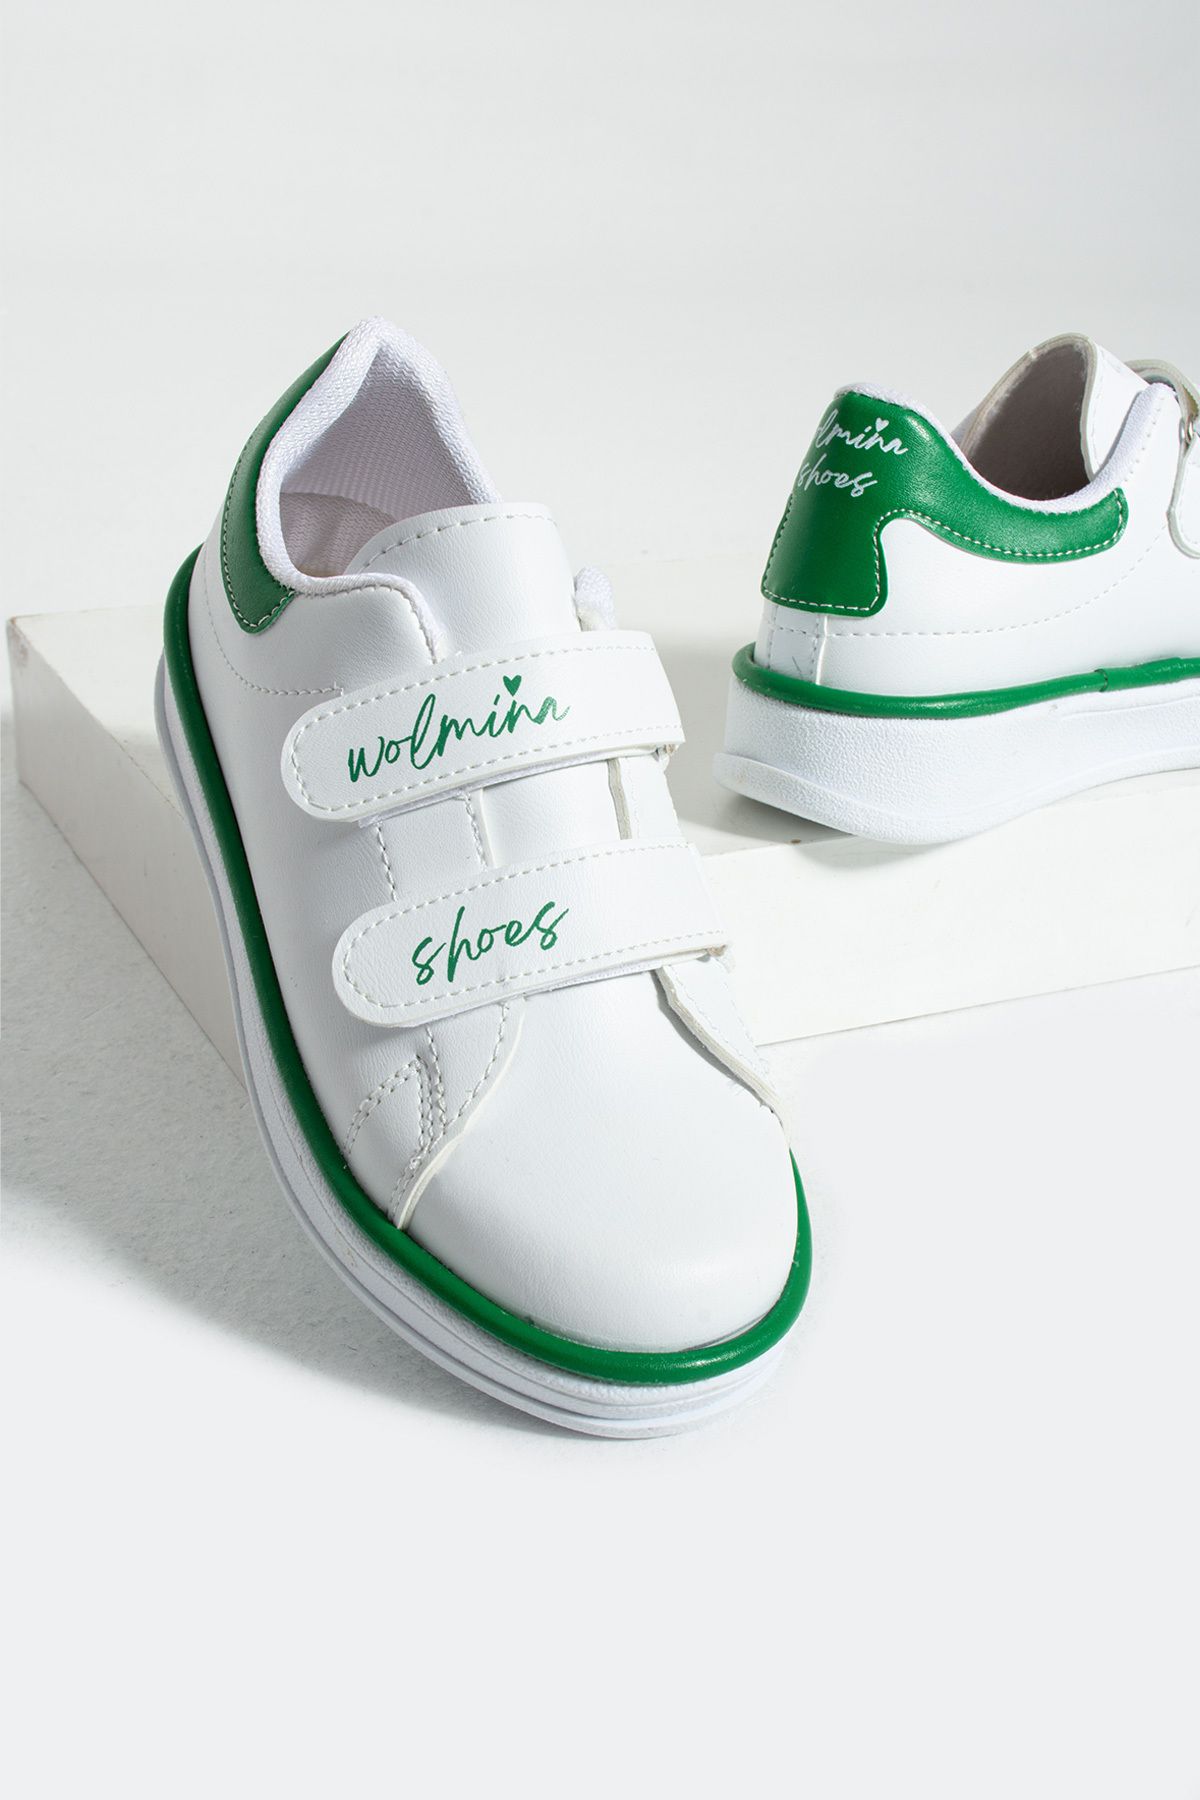 Pembe Potin Çocuk Unisex Beyaz Yeşil Sneakers Cırtlı Bantlı Günlük Rahat Spor Ayakkabı